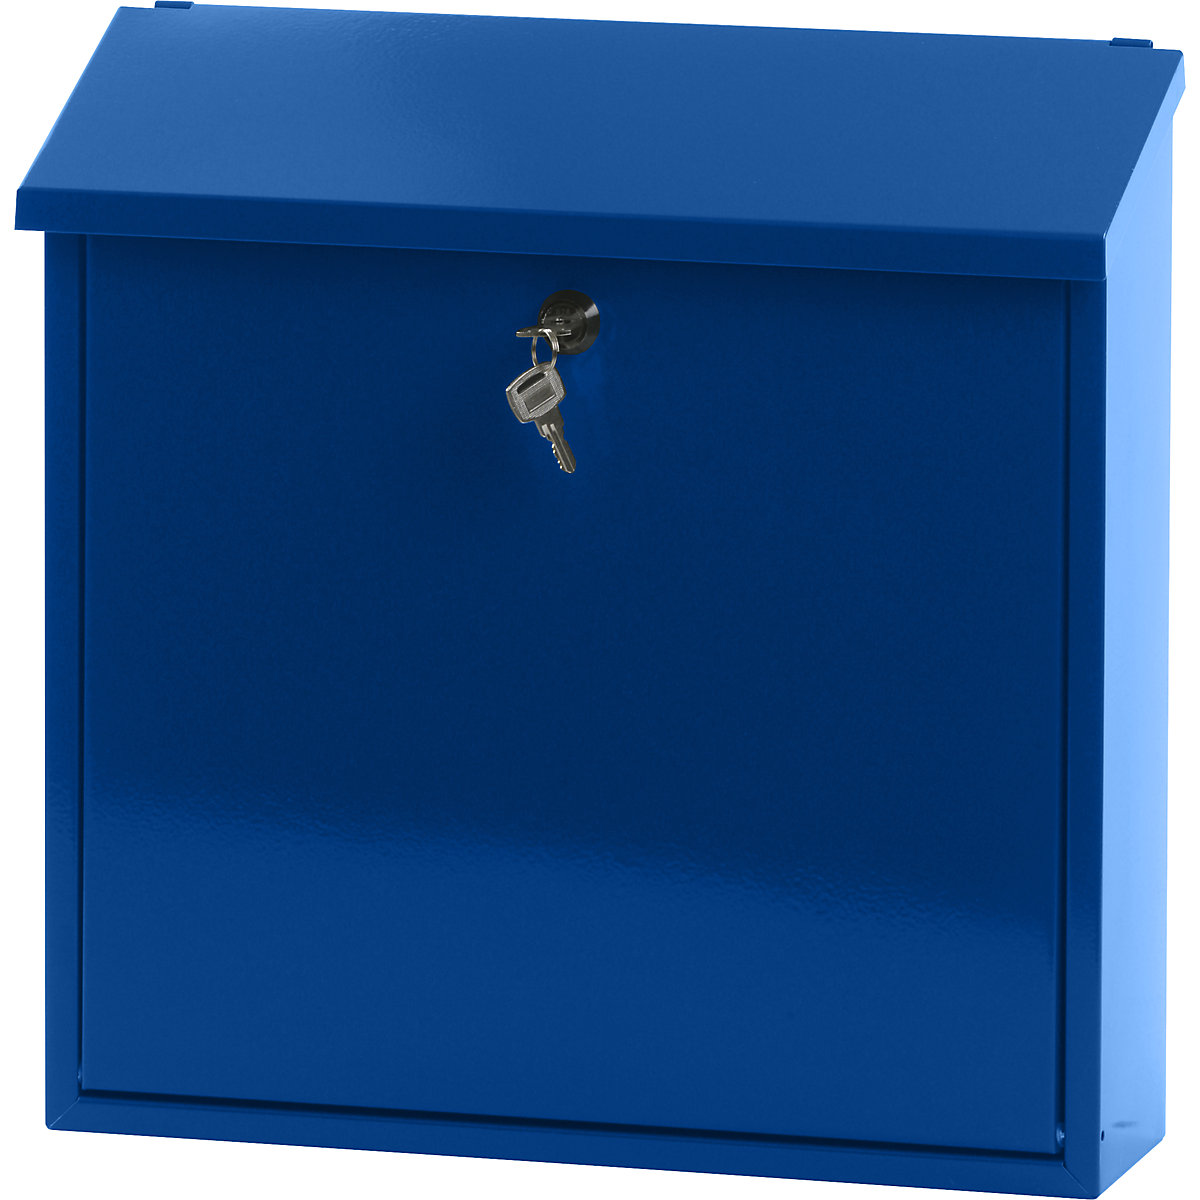 Poštovní schránka, se sklopnou šikmou stříškou, v x š x h 370 x 370 x 115 mm, ocelový plech, s práškovým nástřikem, modrá RAL 5005-7